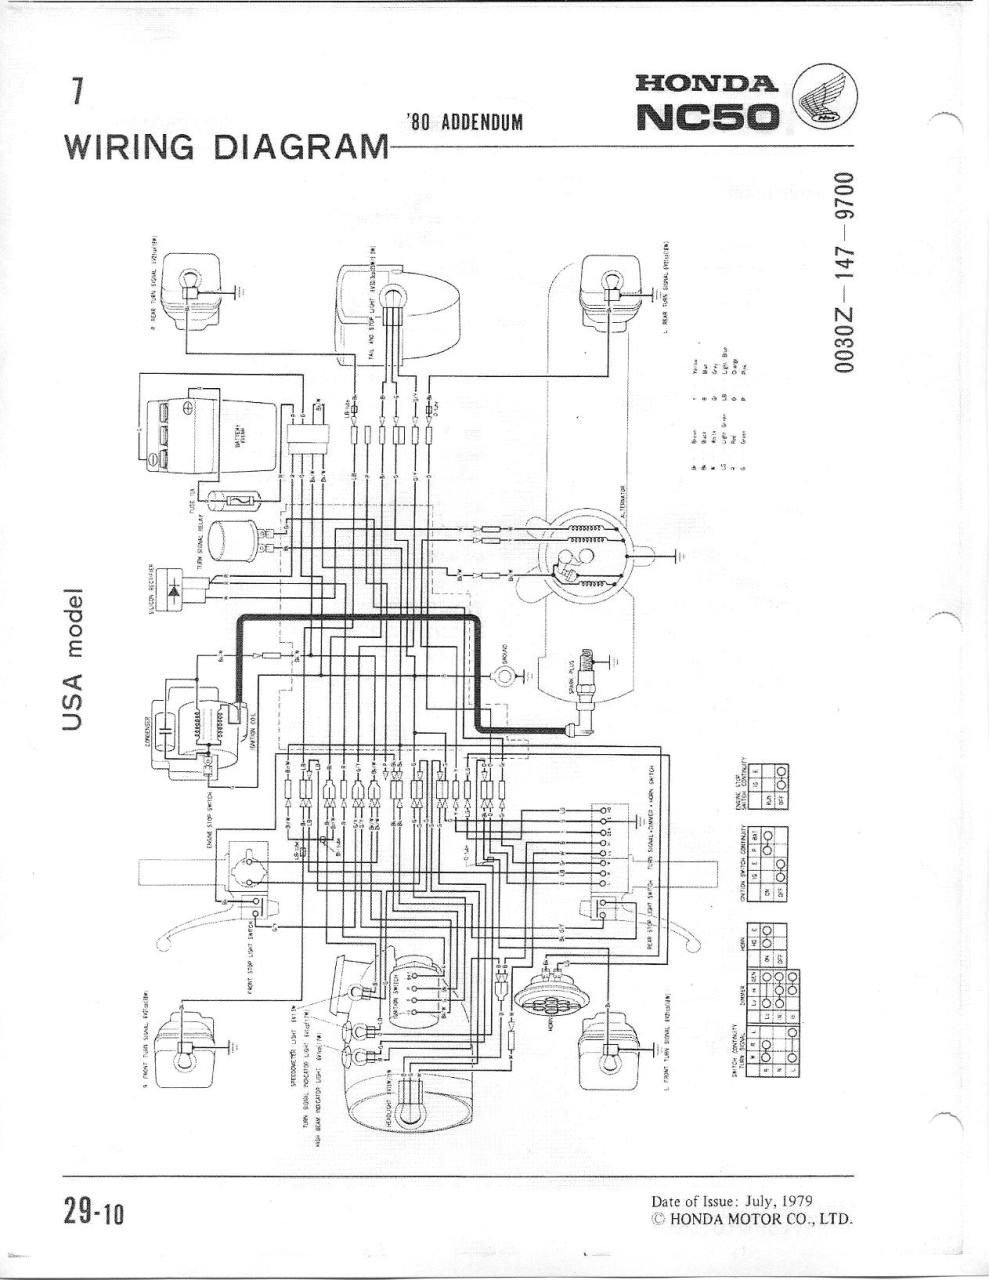 1971 El Camino Wiring Diagram